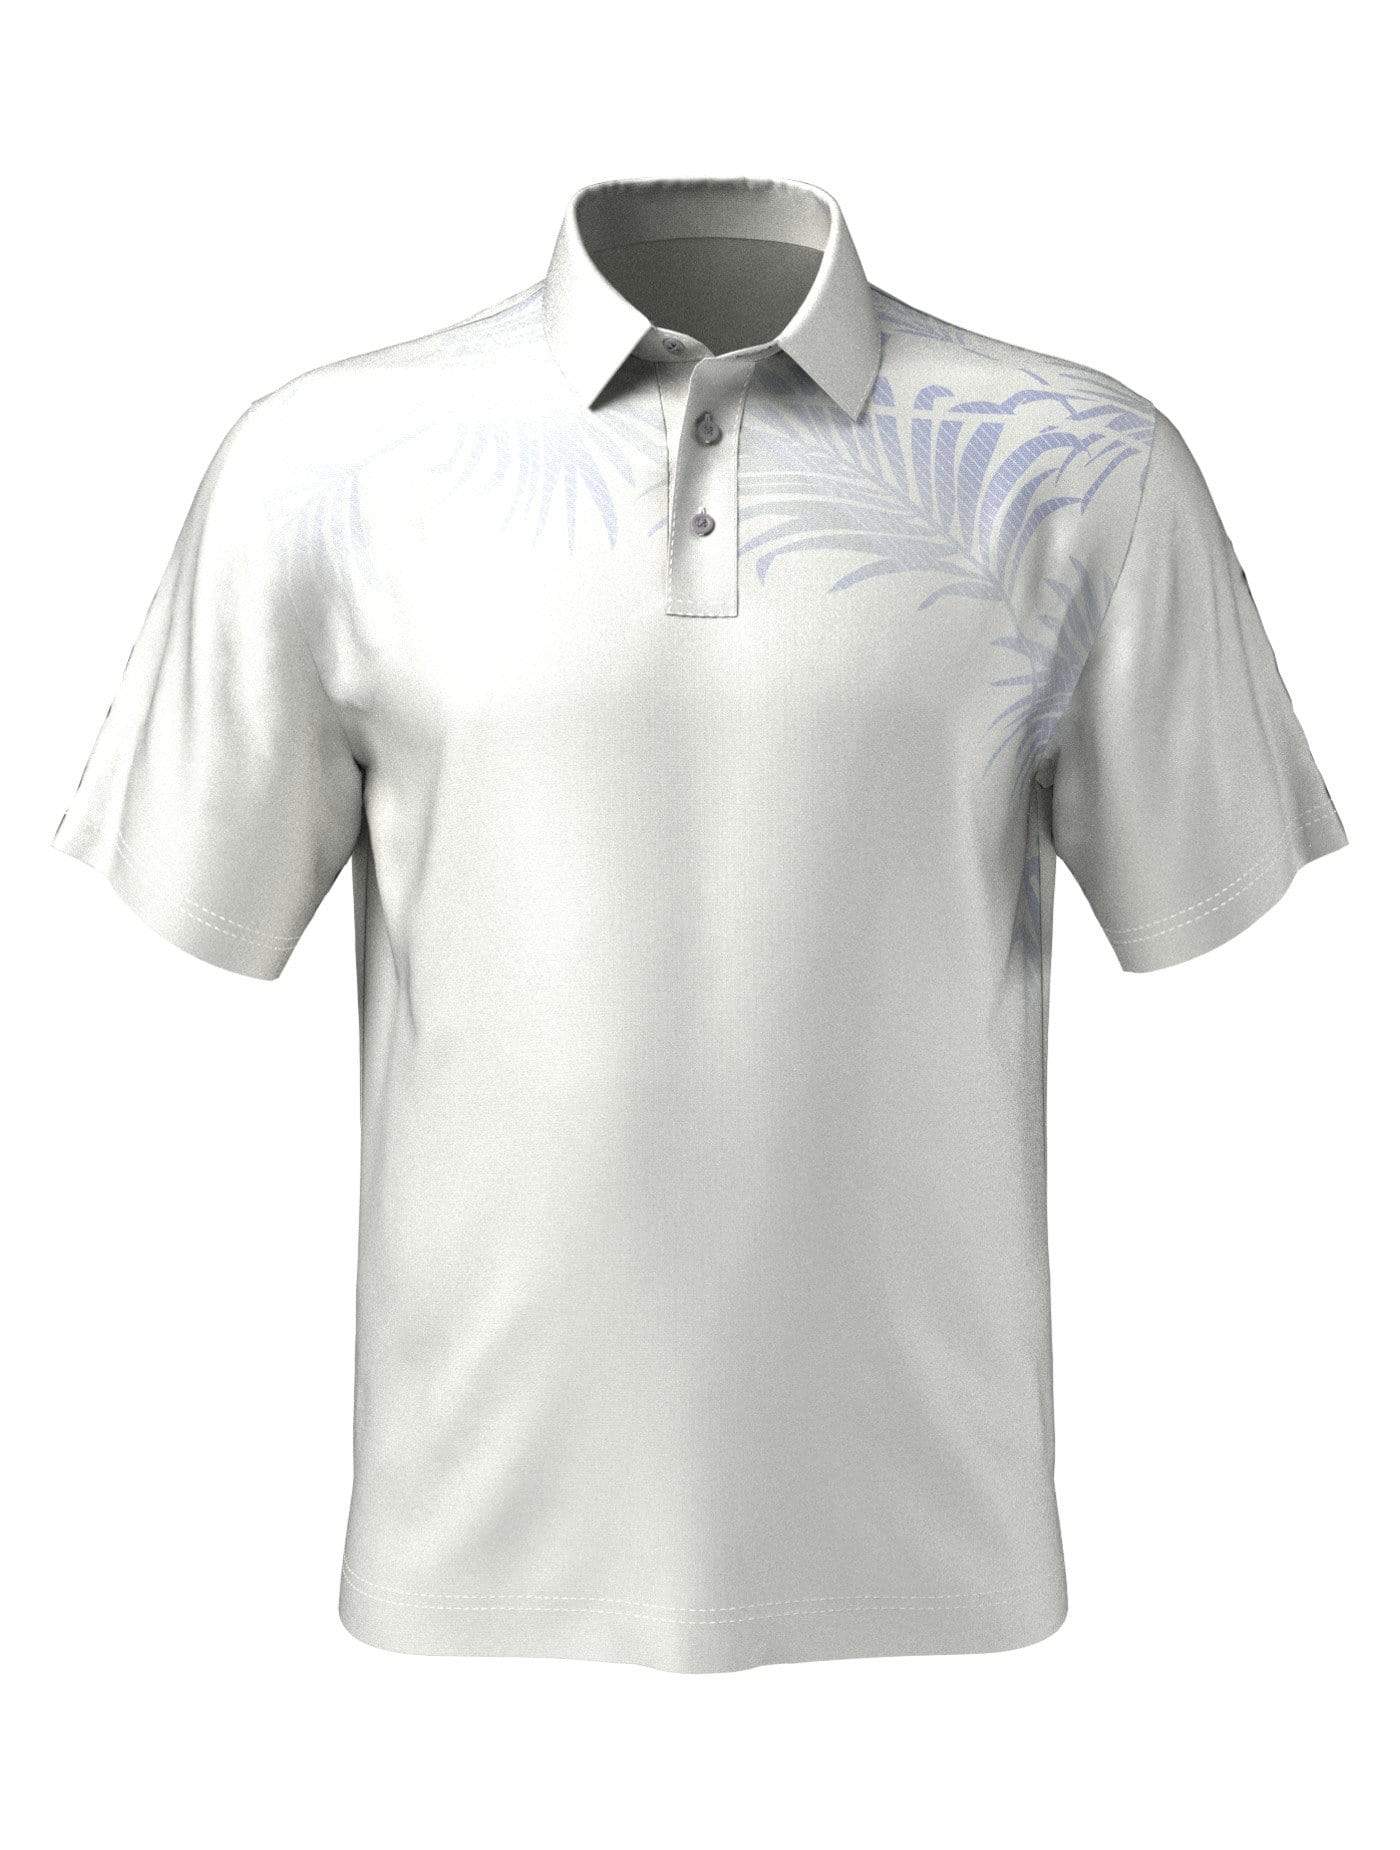 PGA TOUR Apparel Boys Asymmetrical Tropical Print Polo Shirt, Size Medium, White, 100% Polyester | Golf Apparel Shop